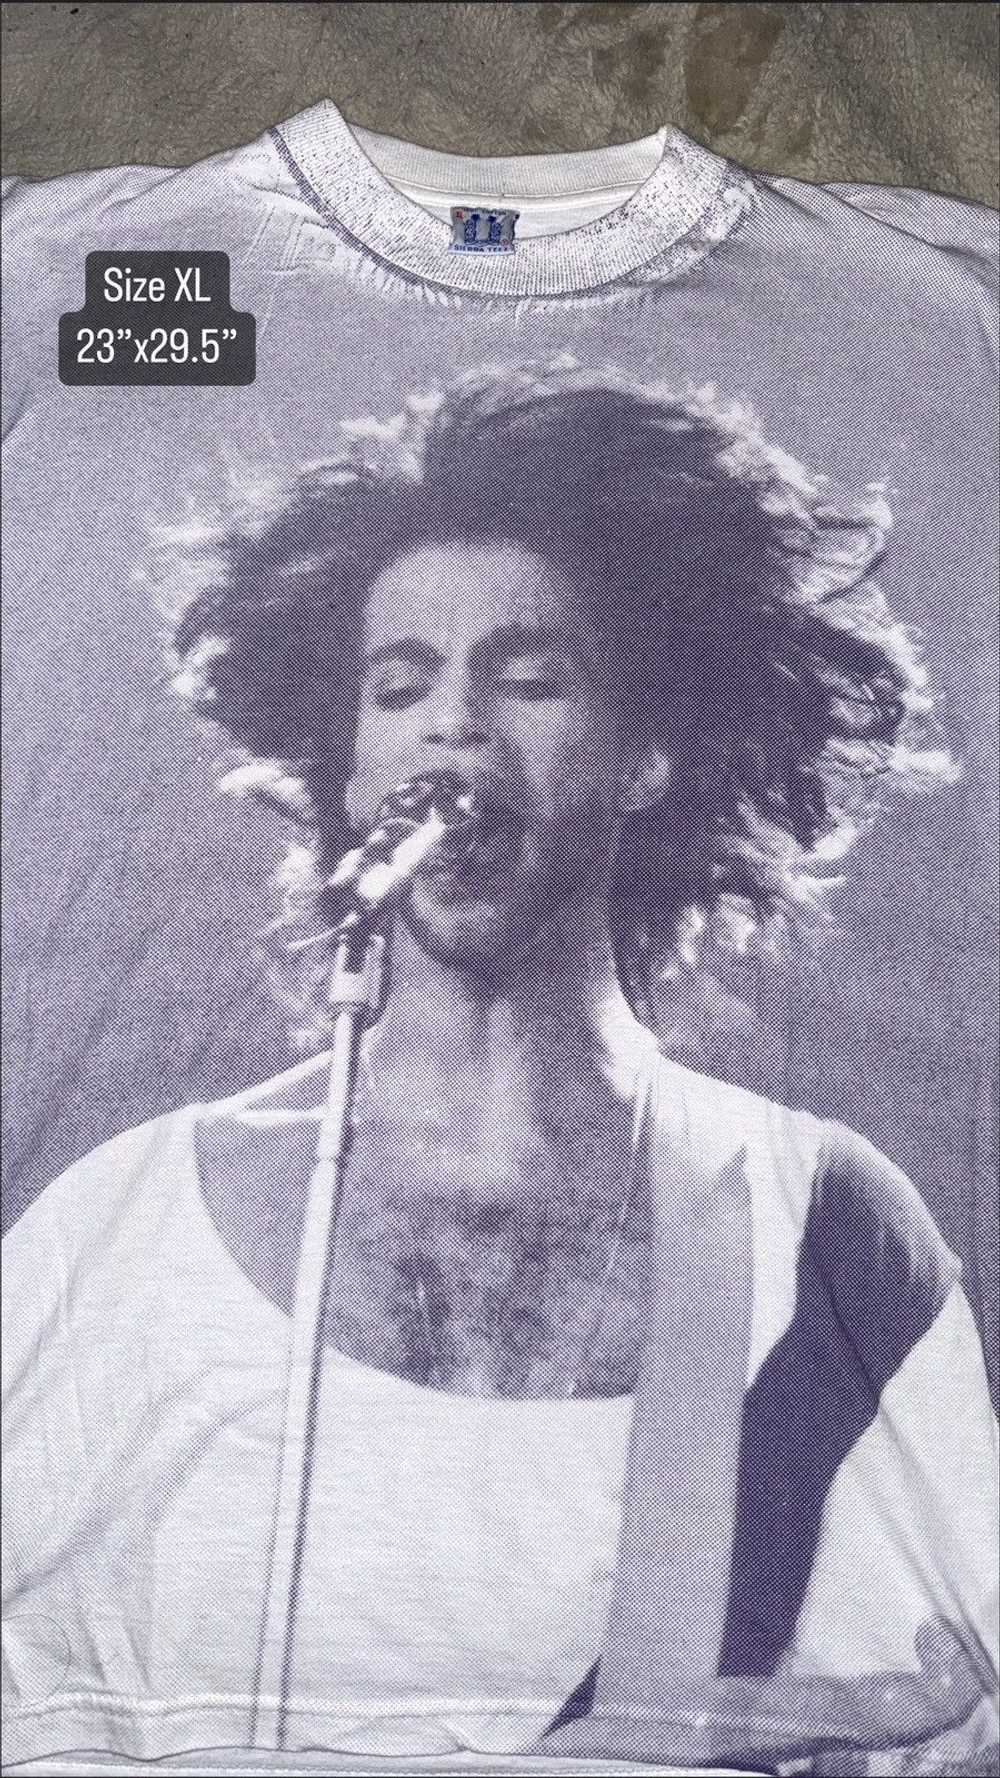 Prince × Vintage Vintage AOP Prince Tee - image 1